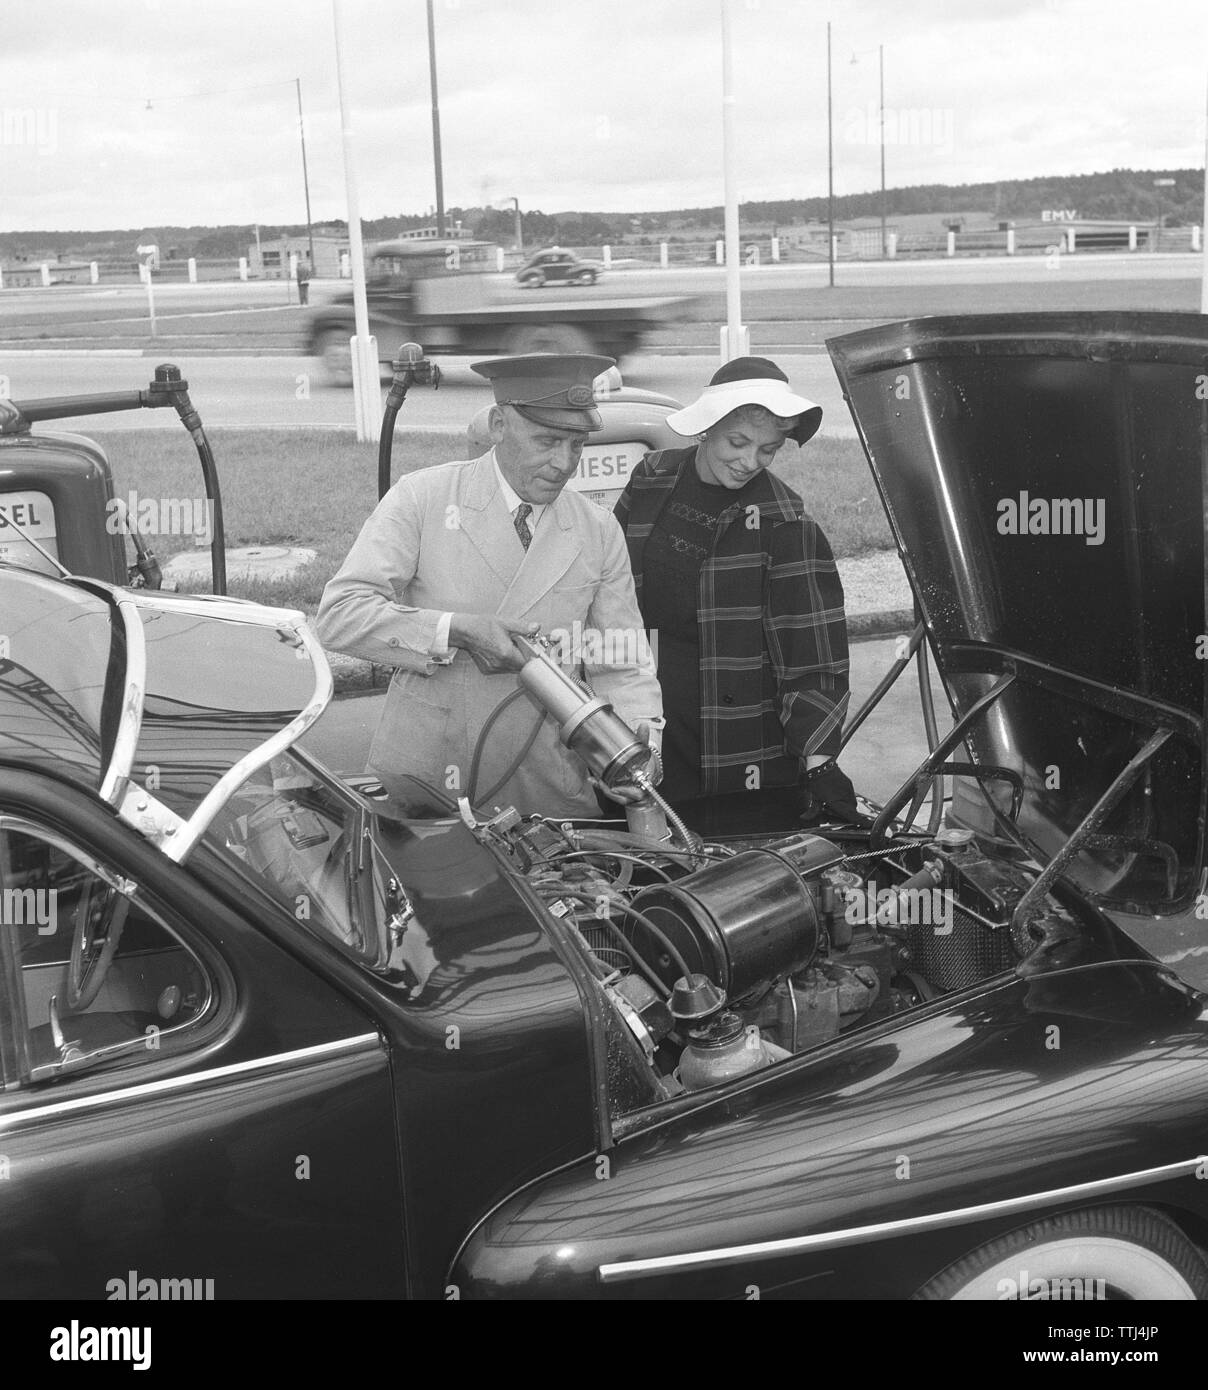 Auto Besitzer der 1950er Jahre. Eine Frau hat an einer Tankstelle angehalten und ist die Hilfe eines Mannes mehr Motoröl füllen. Schweden 1954. Kristoffersson ref BP 35-11 Stockfoto